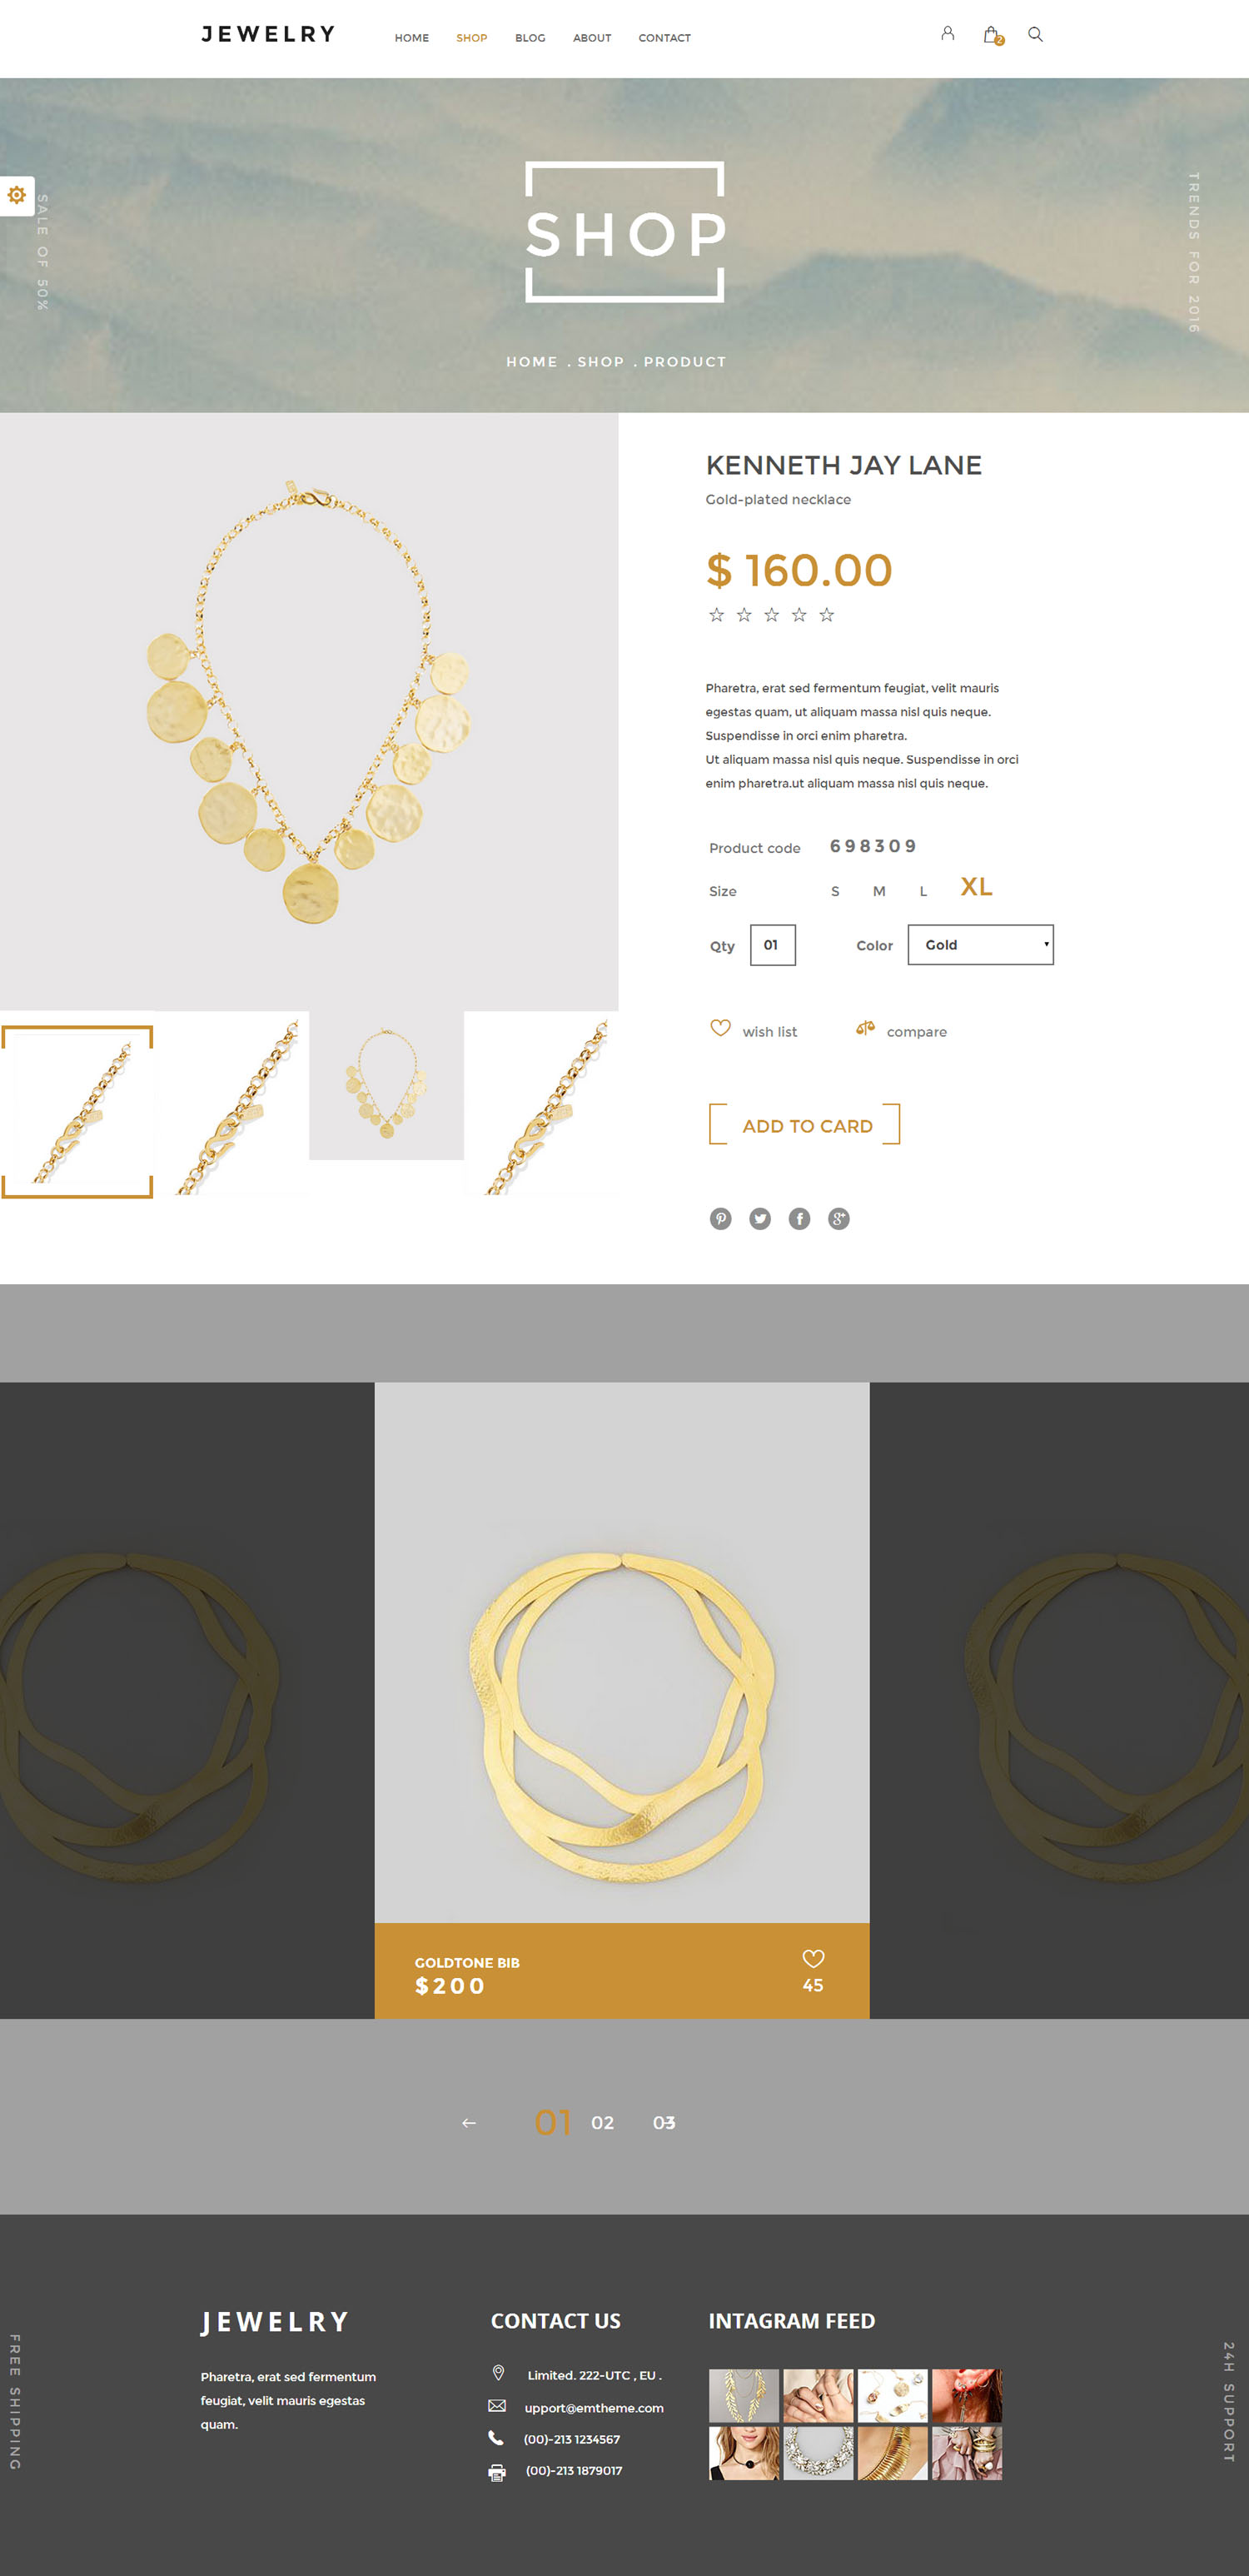 Bootstrap珠宝电商购物网站html模板_html饰品商城模板 - Jewelry3750